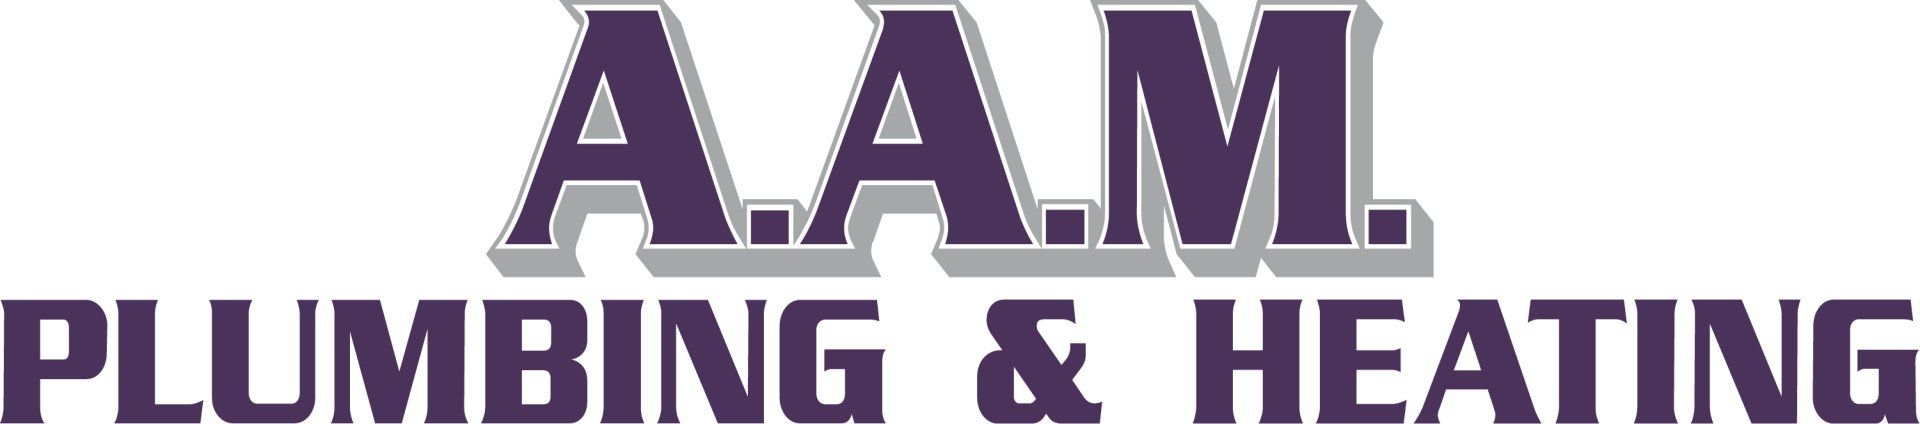 AAM Plumbing & Heating - Logo